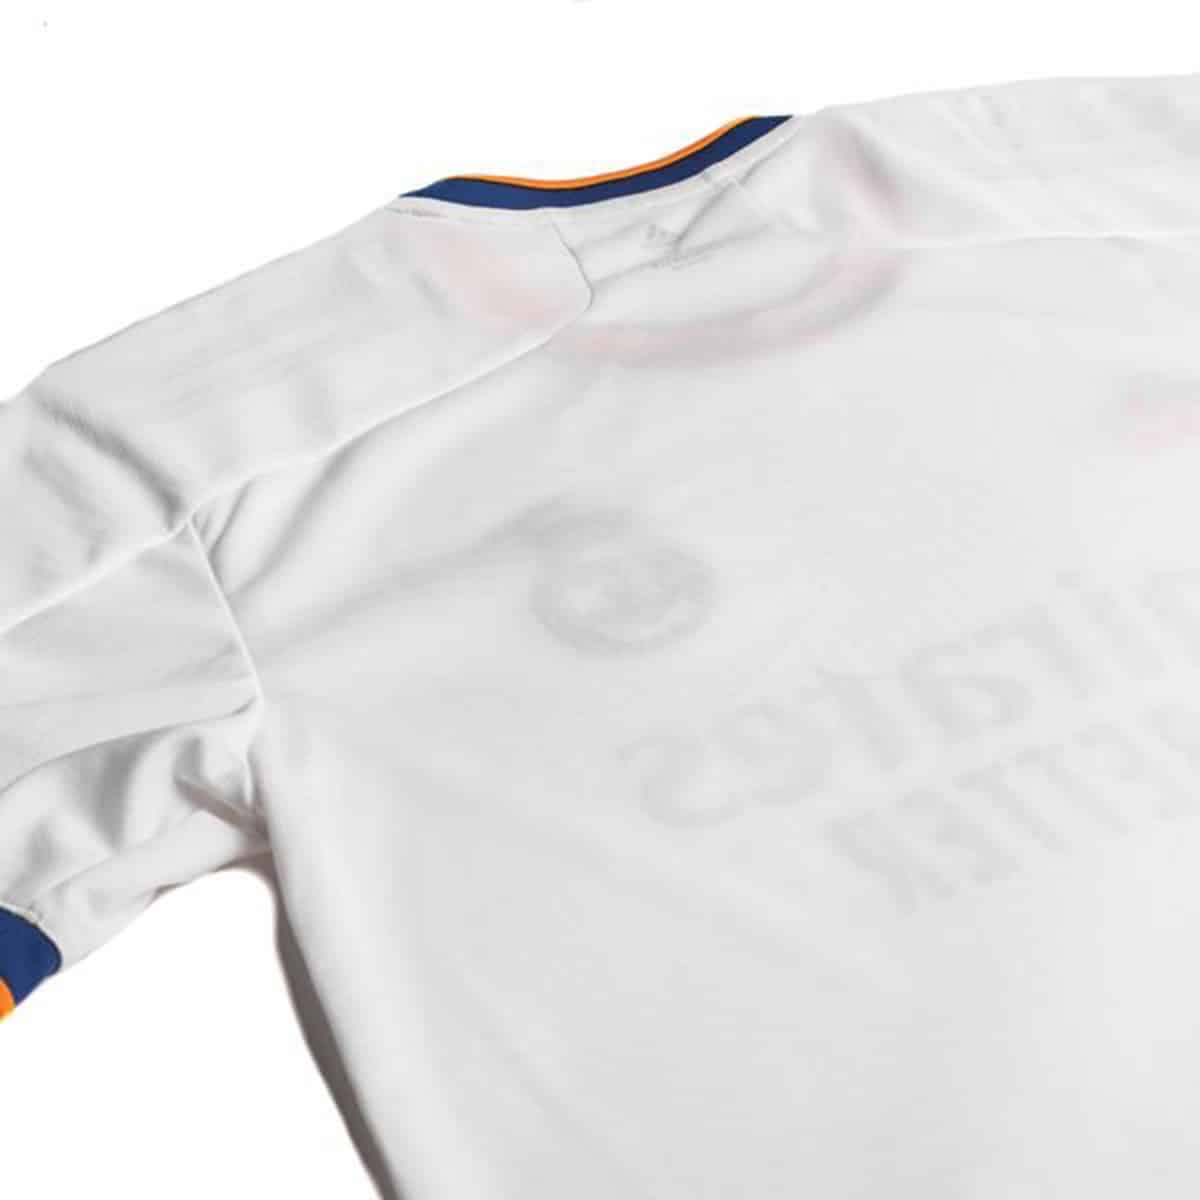 Primera Camiseta Adulto niño. Camiseta de fútbol Real Madrid 2021 2022 Neutra sin nombre y número Réplica Oficial autorizada 